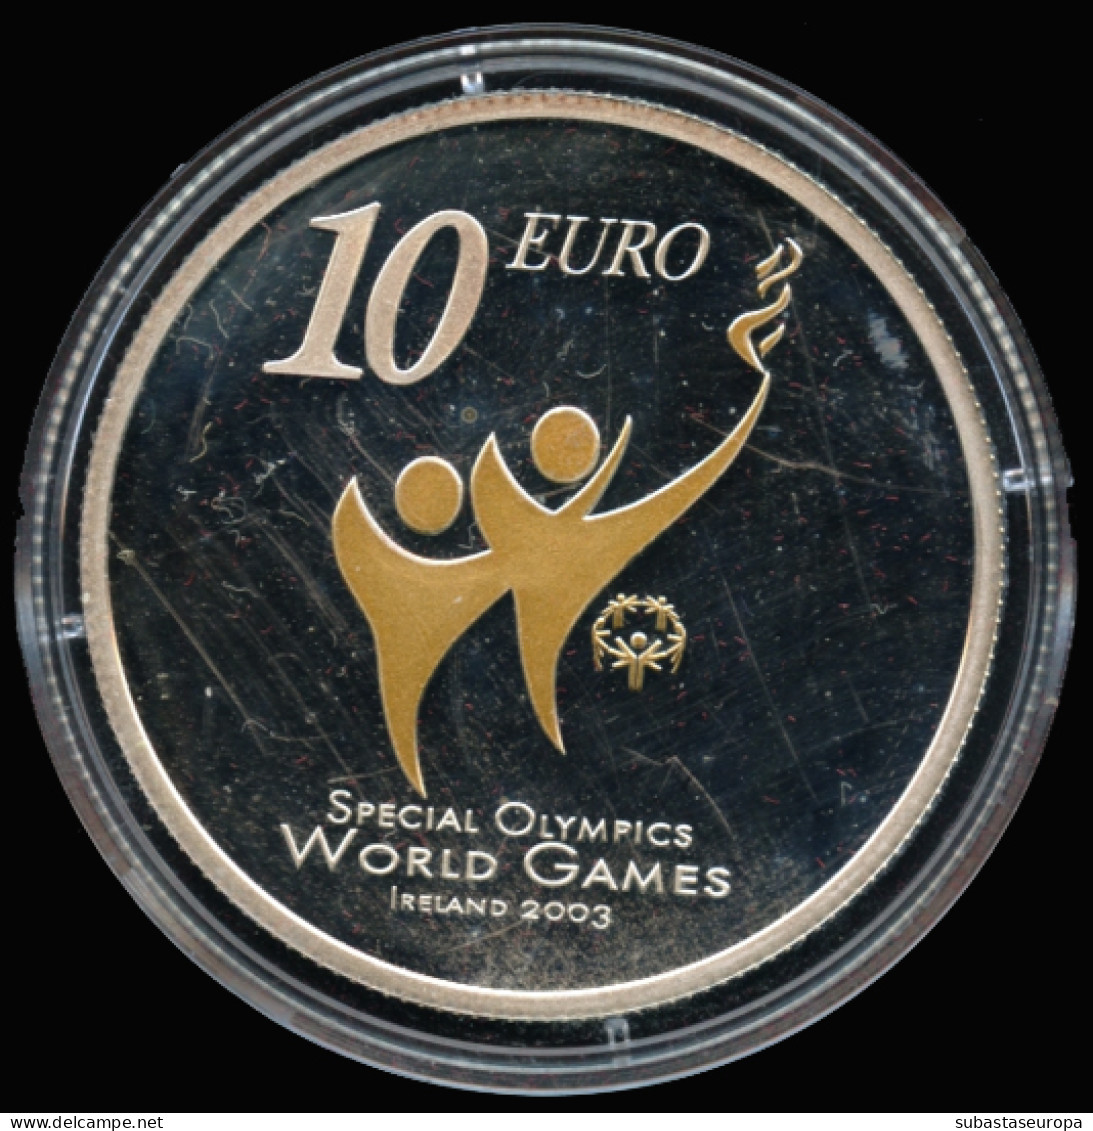 Irlanda. Moneda De Plata De 10 Euros. En Estuche. Dedicada A "Special Olympics World Summer Games", Año 2003. - Ireland